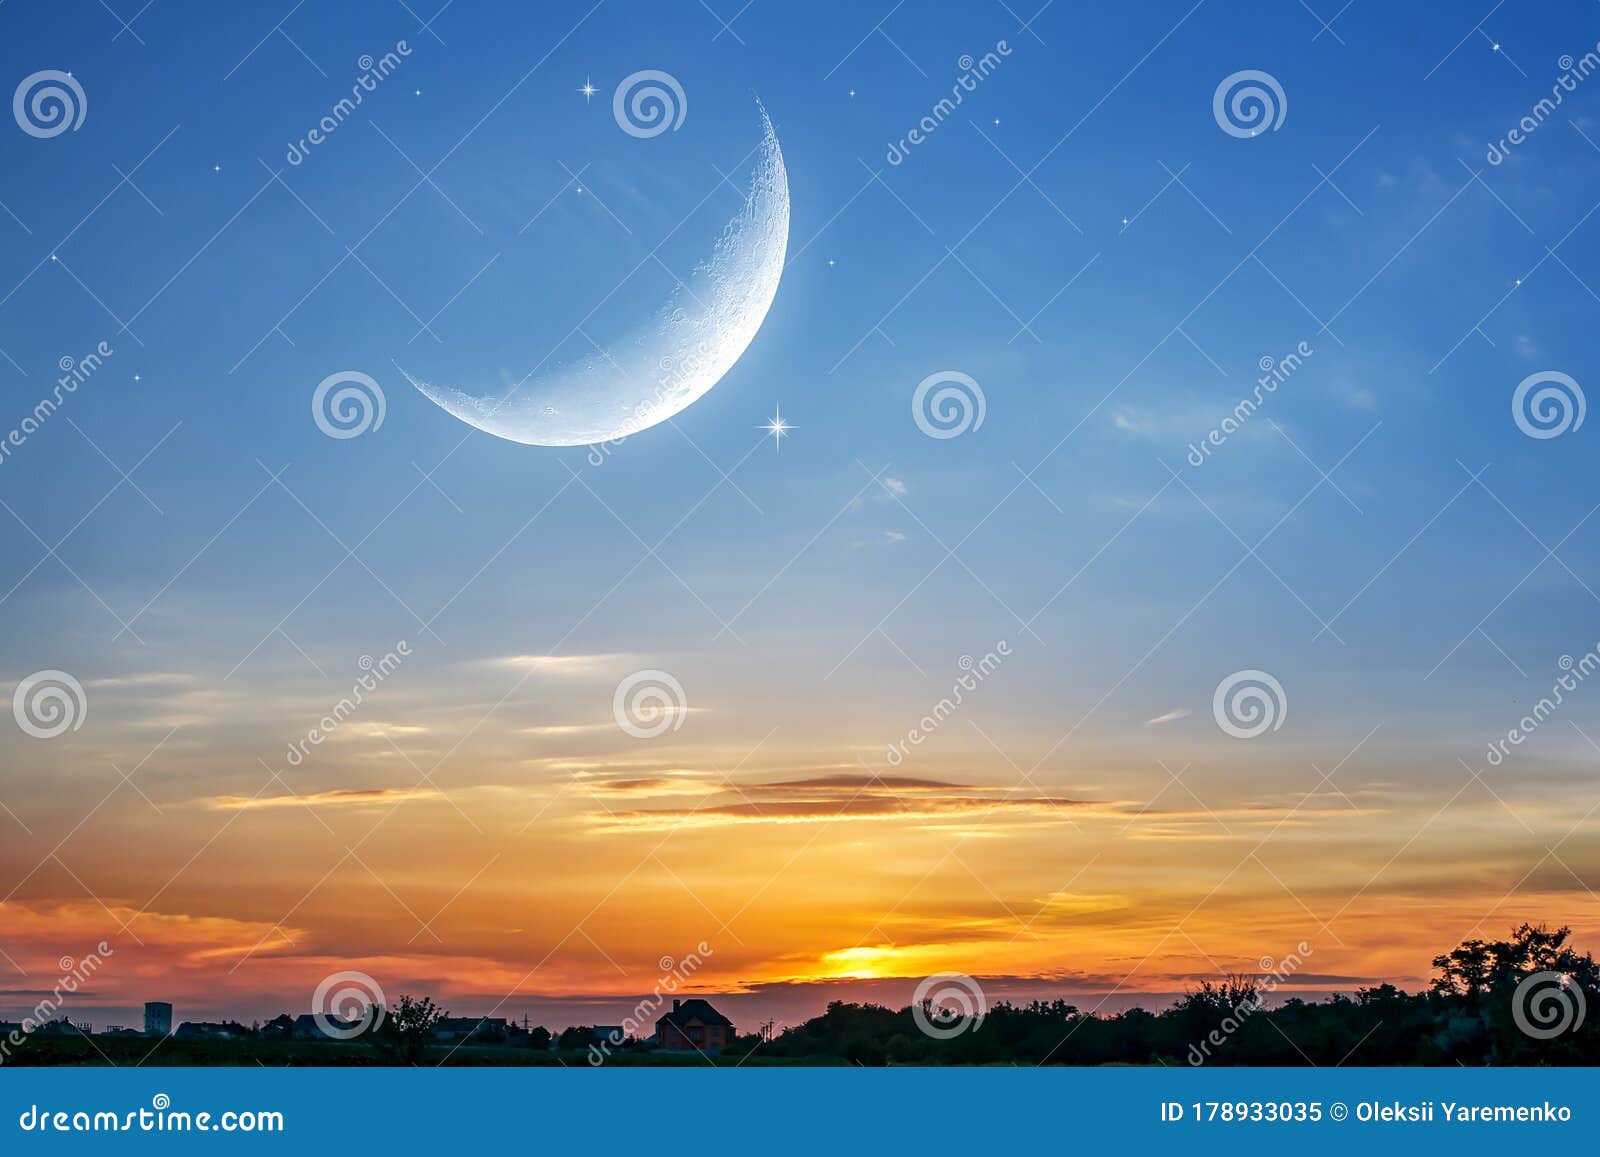 Đêm nay, hãy dừng mọi việc lại và nhìn lên bầu trời xanh thẳm, khi mặt trăng tròn đẹp tung những tia sáng sưởi ấm cuộc đời. Hình ảnh này sẽ giúp bạn tìm lại sự bình yên và cảm nhận hơi thở của thiên nhiên trong đêm tĩnh lặng.